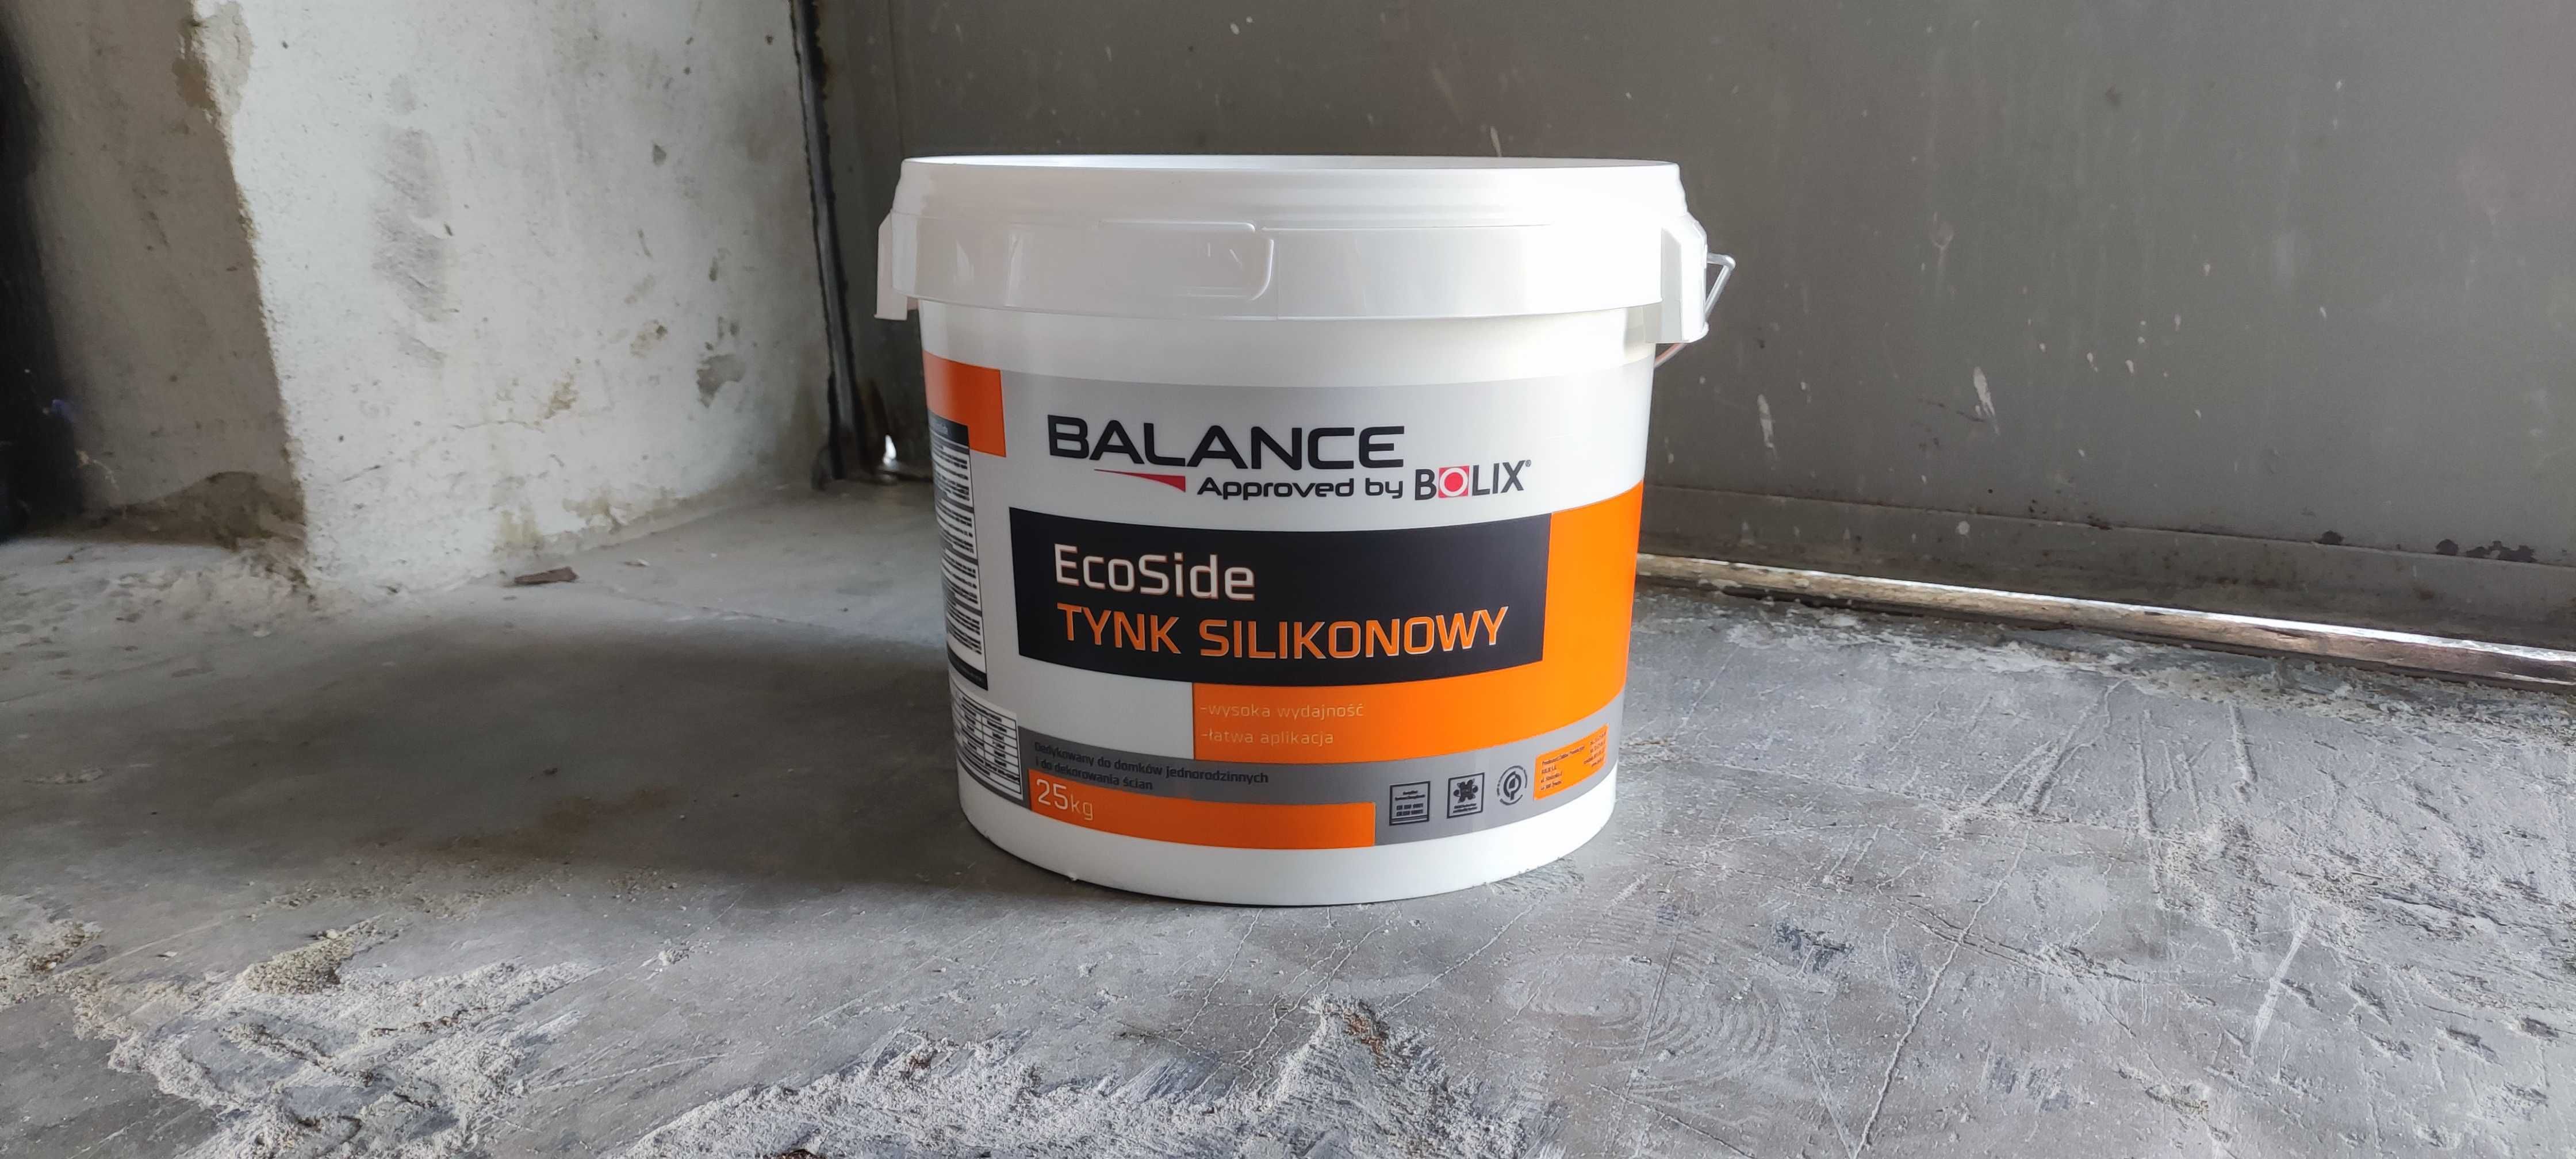 Tynk silikonowy Balance EcoSide 25kg baranek 1,5 Bolix.